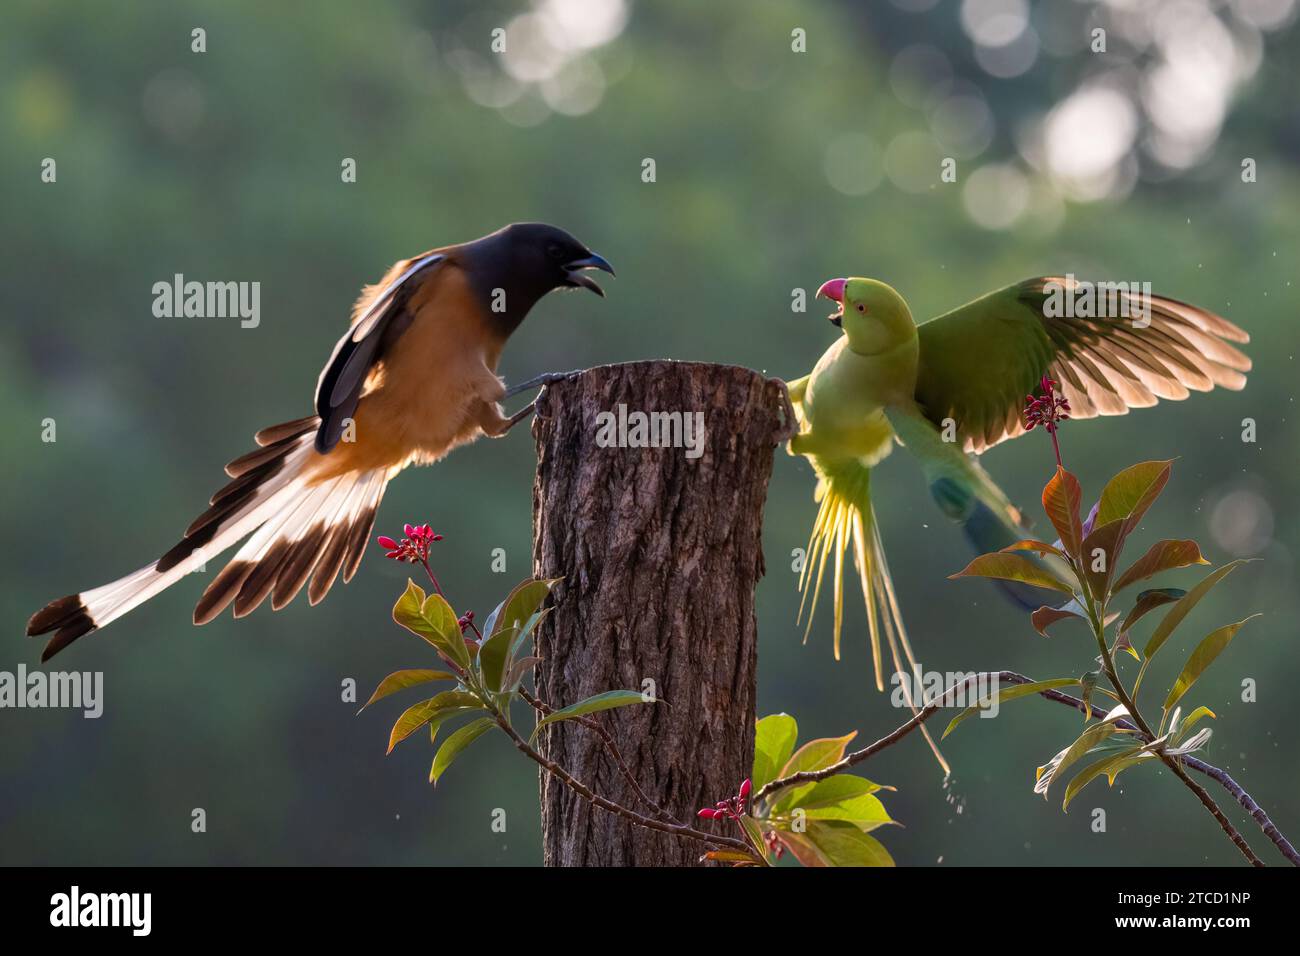 Der Papagei und Baumwipfel kämpfen um das Territorium CHANDIGARH, INDIEN COMEDIC-Bilder zeigen einen schlecht erzogenen Indianerring-Papagei mit Hals und einen mürrischen Baumwipfel Stockfoto